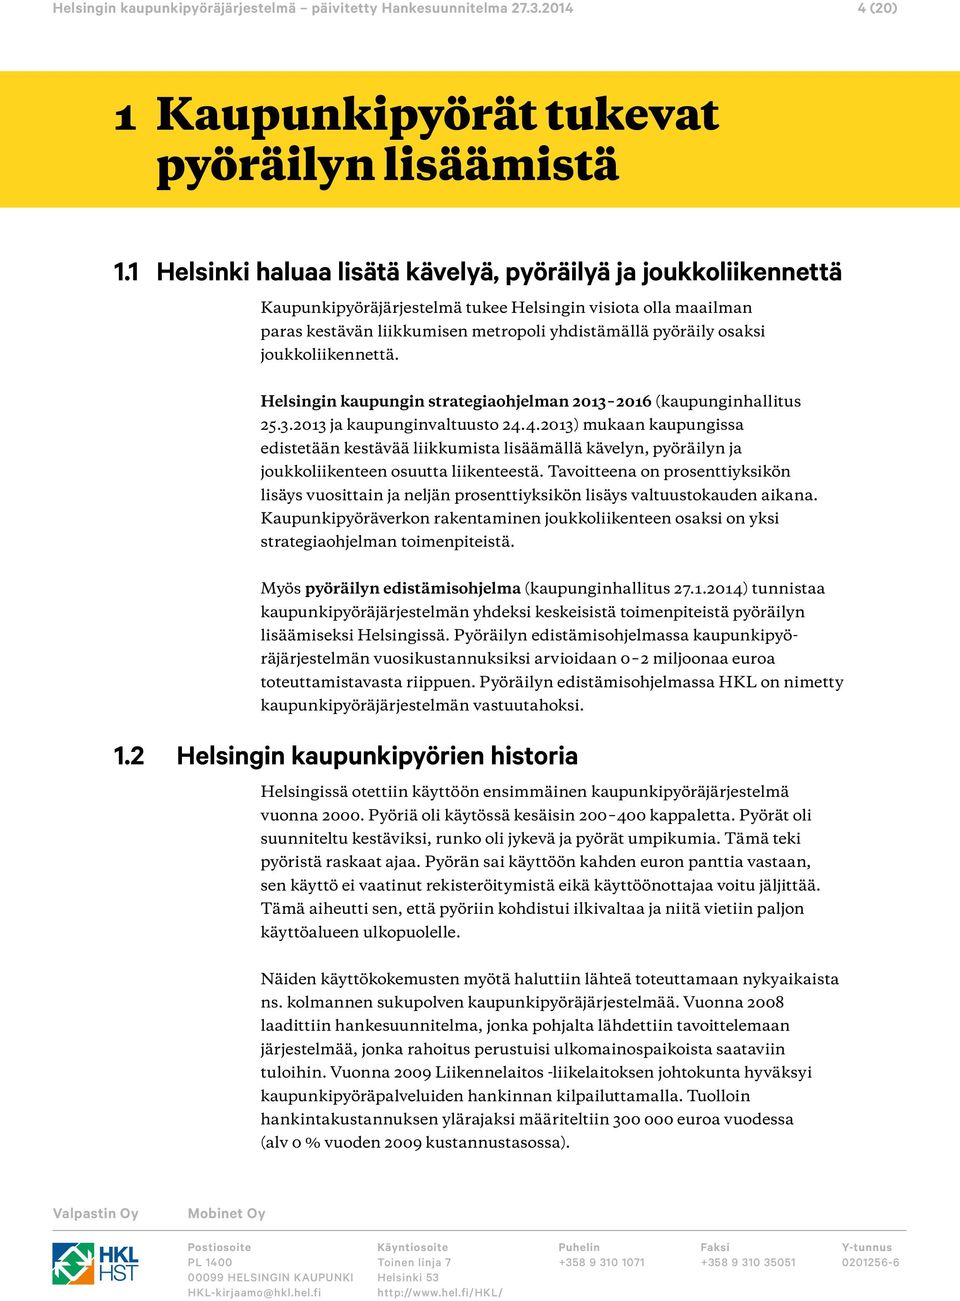 joukkoliikennettä. Helsingin kaupungin strategiaohjelman 213 216 (kaupunginhallitus 25.3.213 ja kaupunginvaltuusto 24.